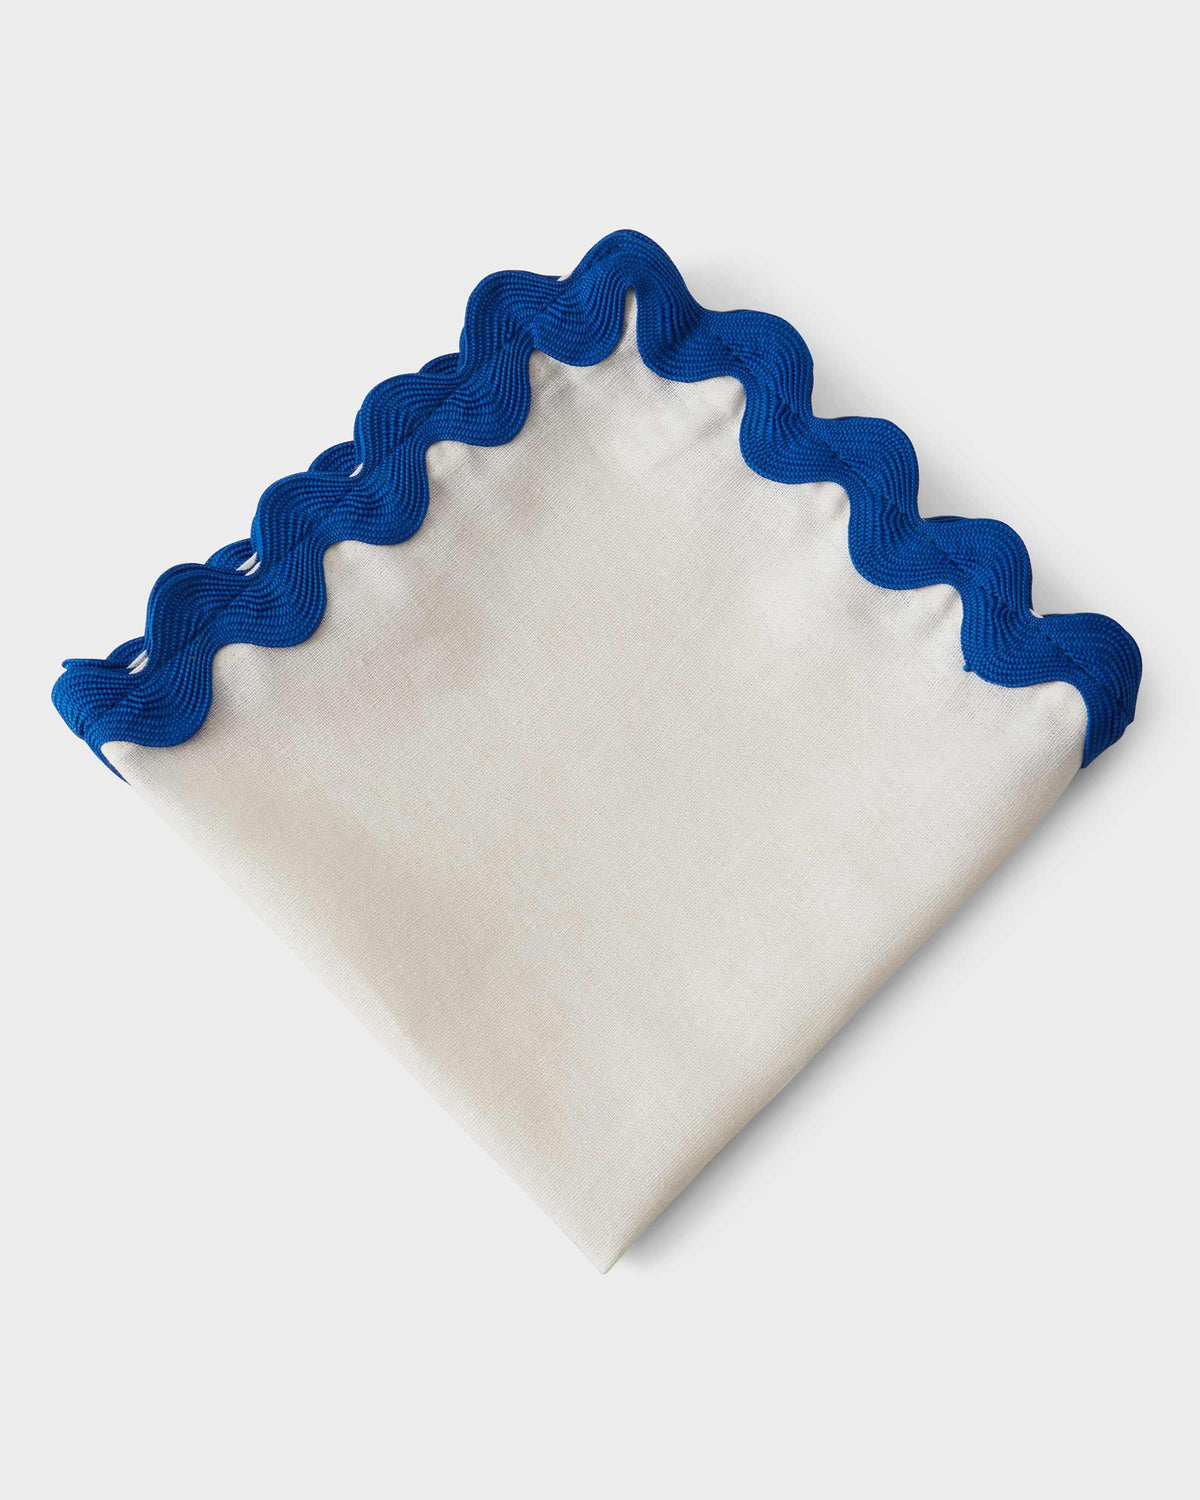 Linen Napkin - Blue ribbon - 40x40cm - Von Home